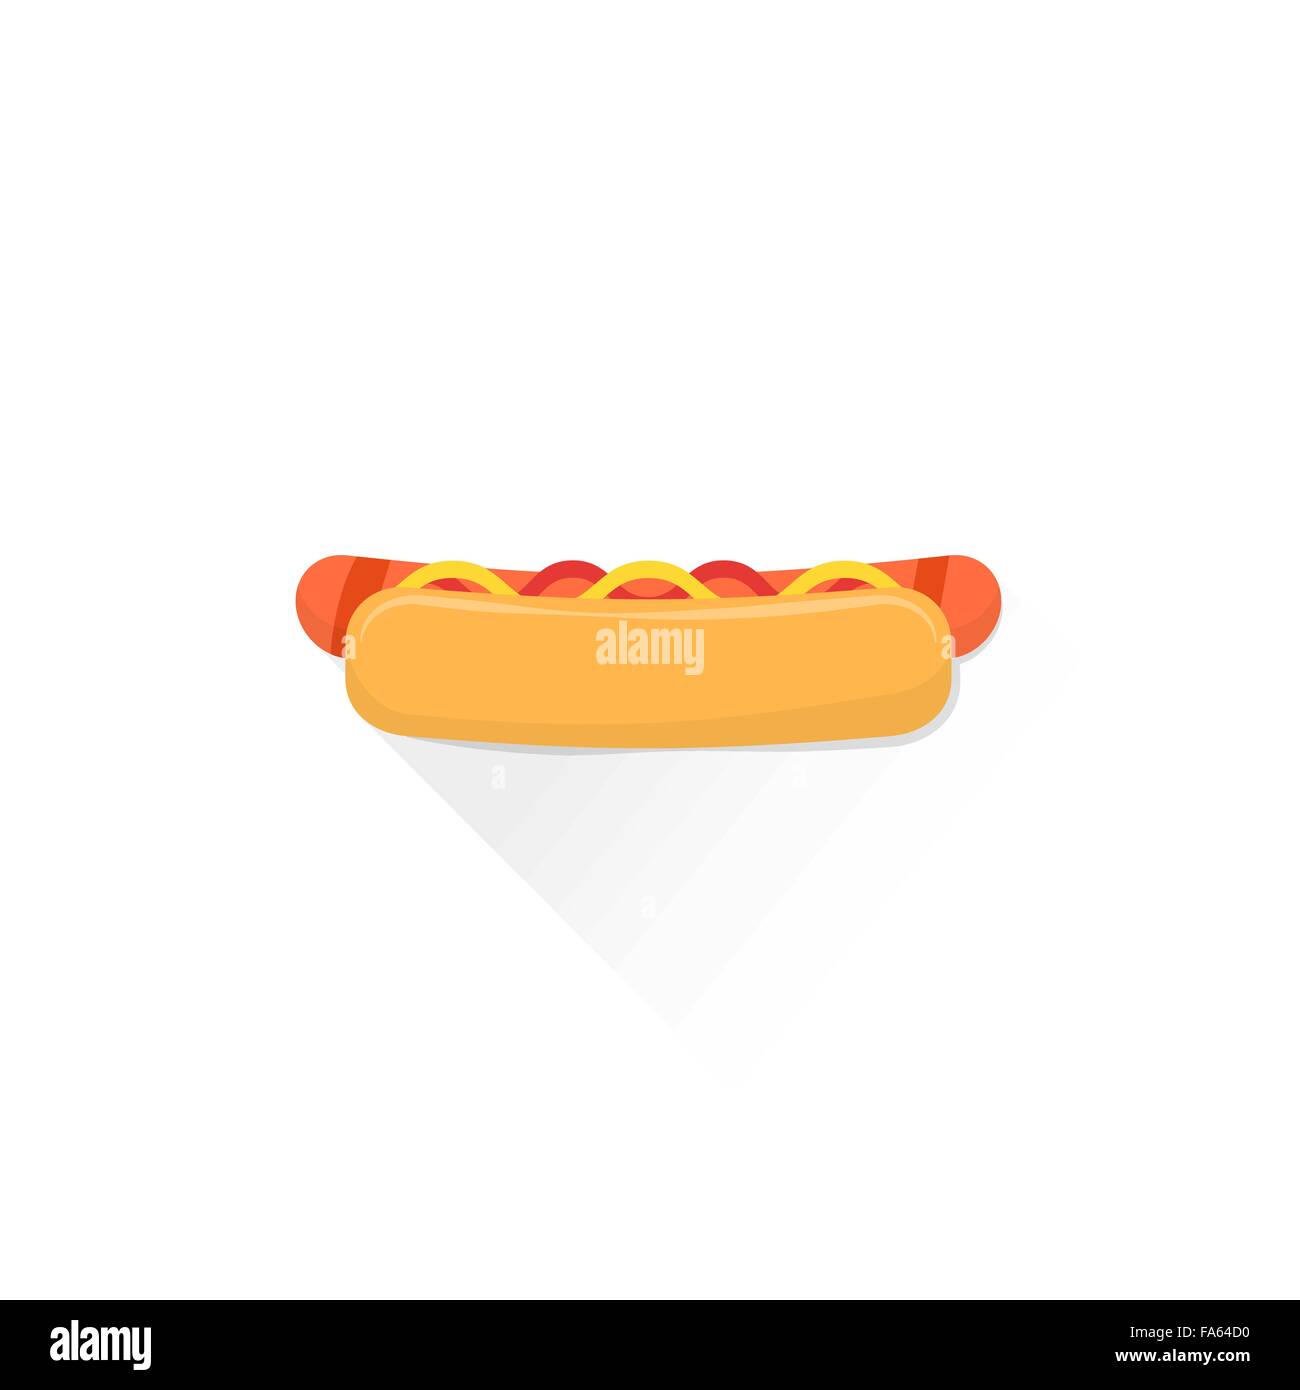 Vektor-Fast-Food-Hot-Dog mit gegrillten Würstchen Senf Tomatenketchup flache design isolierte Abbildung auf weißem Hintergrund mit Stock Vektor